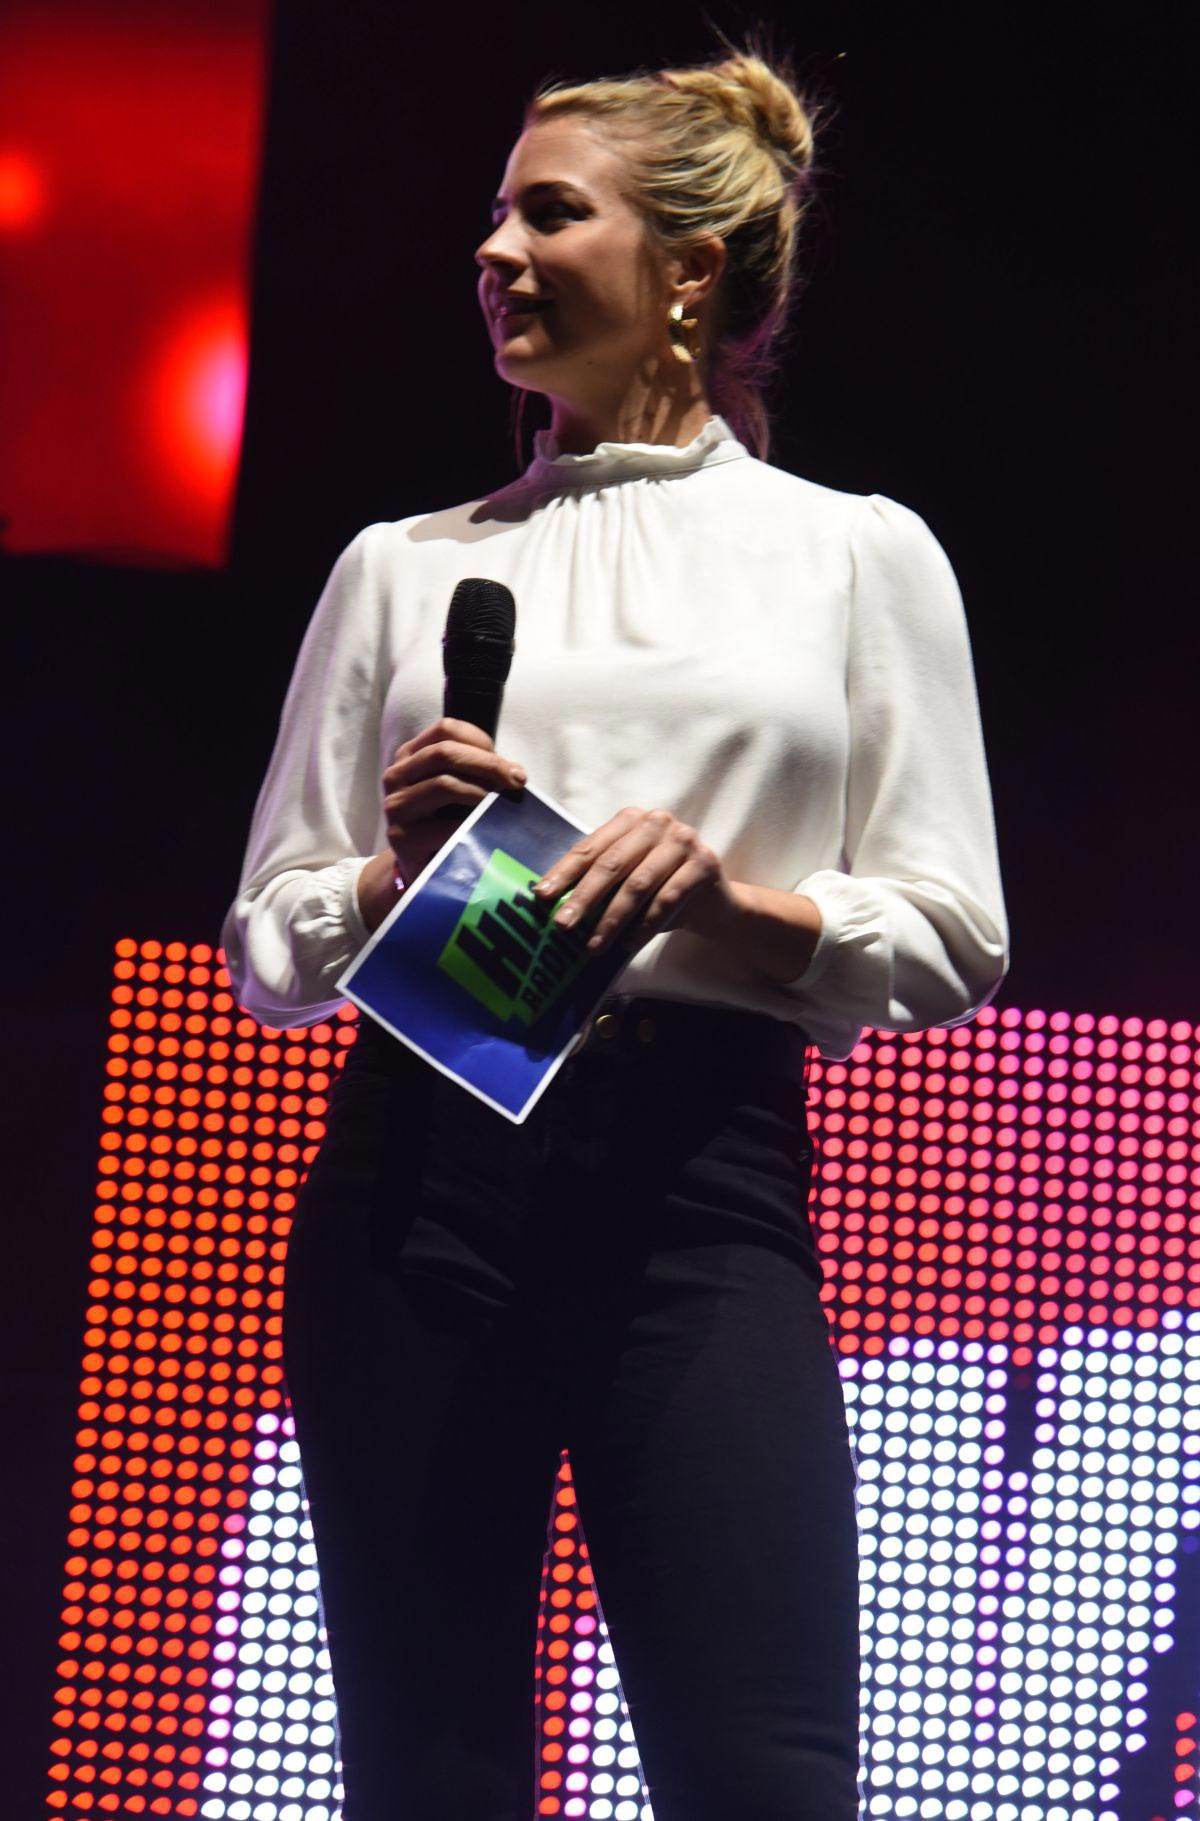 Gemma Atkinson at Hits Radio Live 2018 at Manchester Arena 2018/11/25